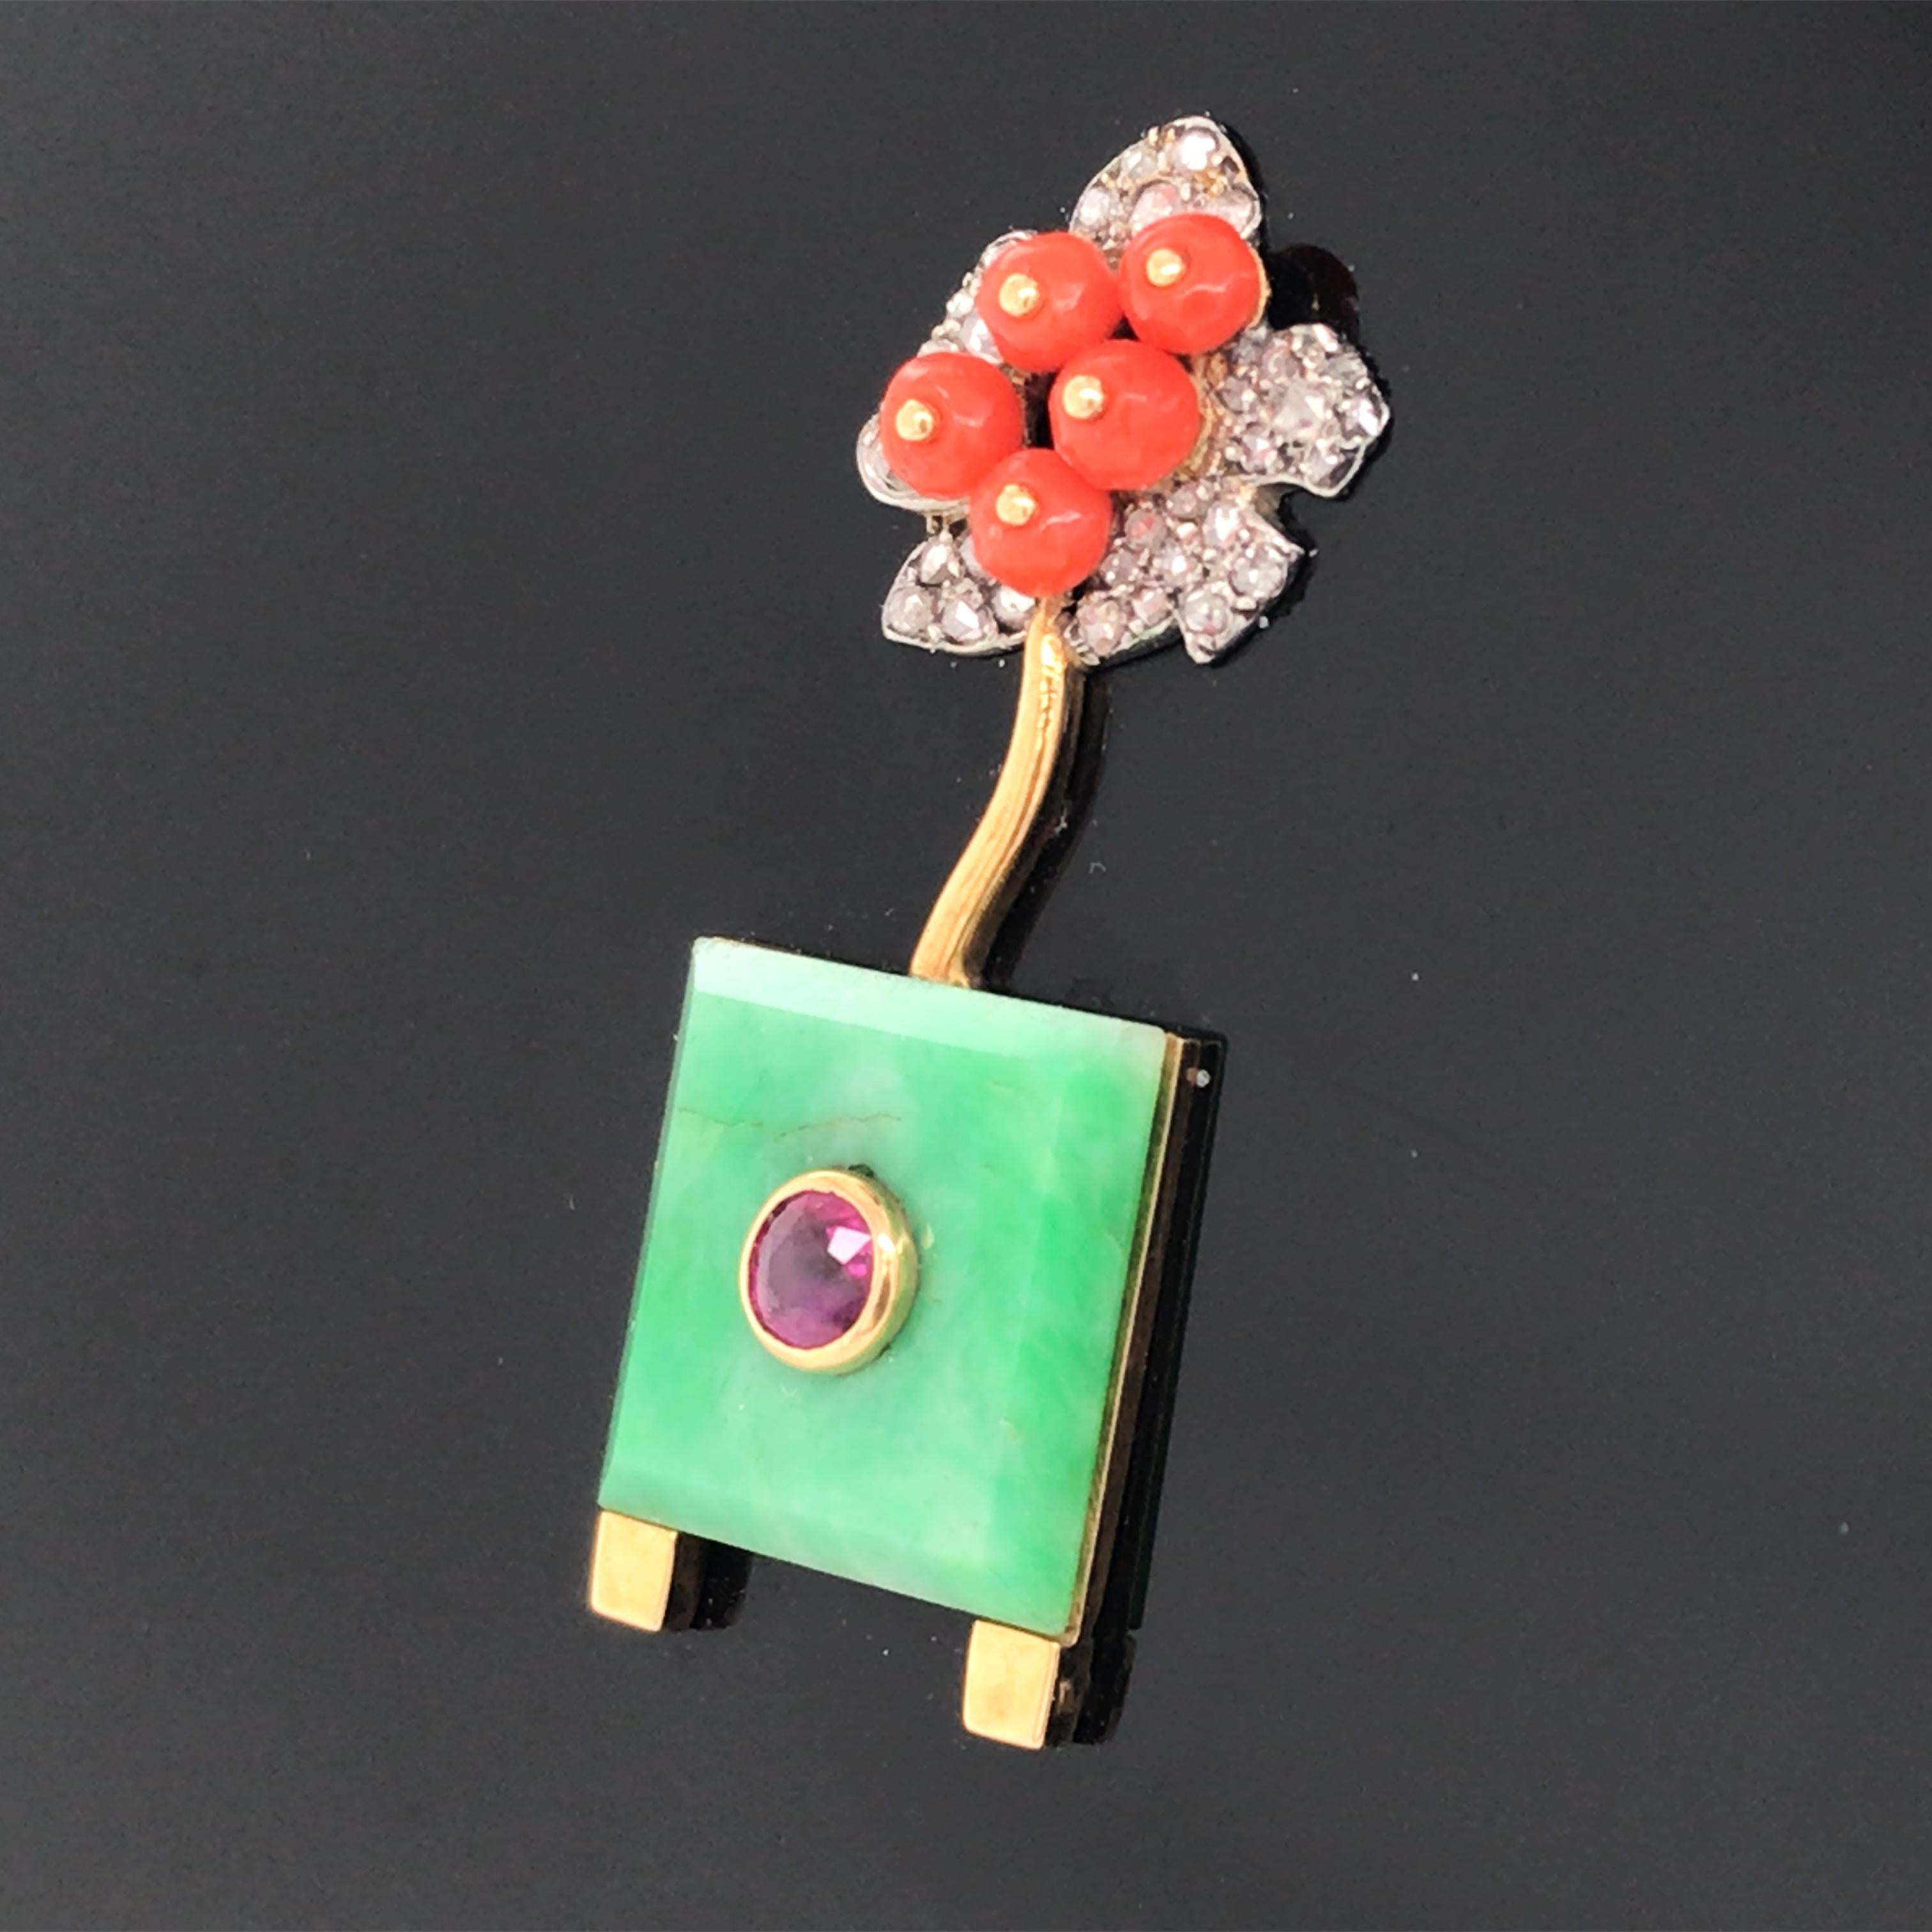 Circa 1925. Diamants taillés en rose, plaque de jade carrée, rubis rond, perles de corail, résine noire. 

Cachet : 